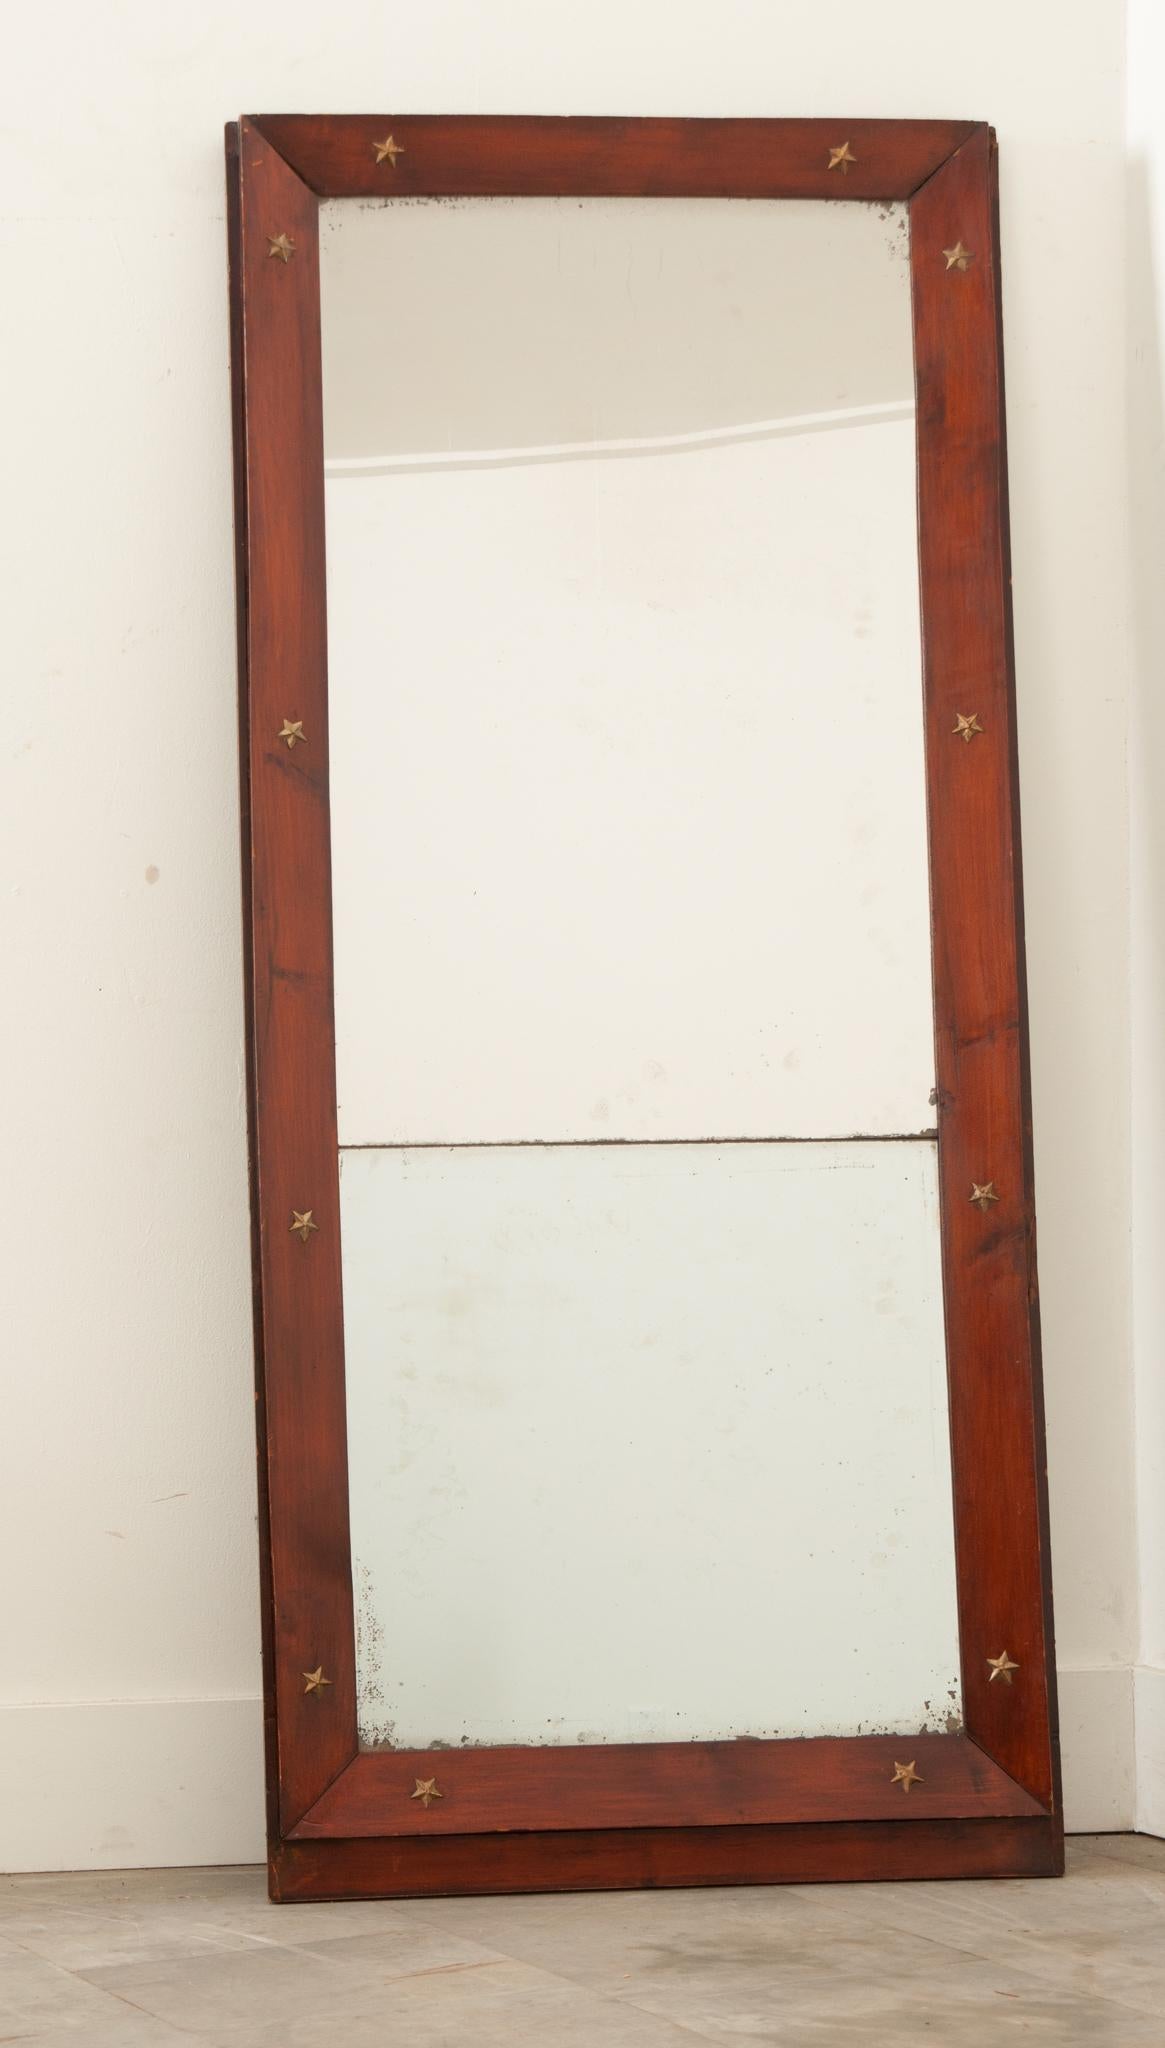 Miroir Empire de France, de style courtois, avec sa plaque de miroir d'origine. Le cadre est en acajou biseauté et décoré d'étoiles en bronze doré, un motif que l'on retrouve fréquemment dans le style Empire. Datant d'environ 1860, ce miroir est